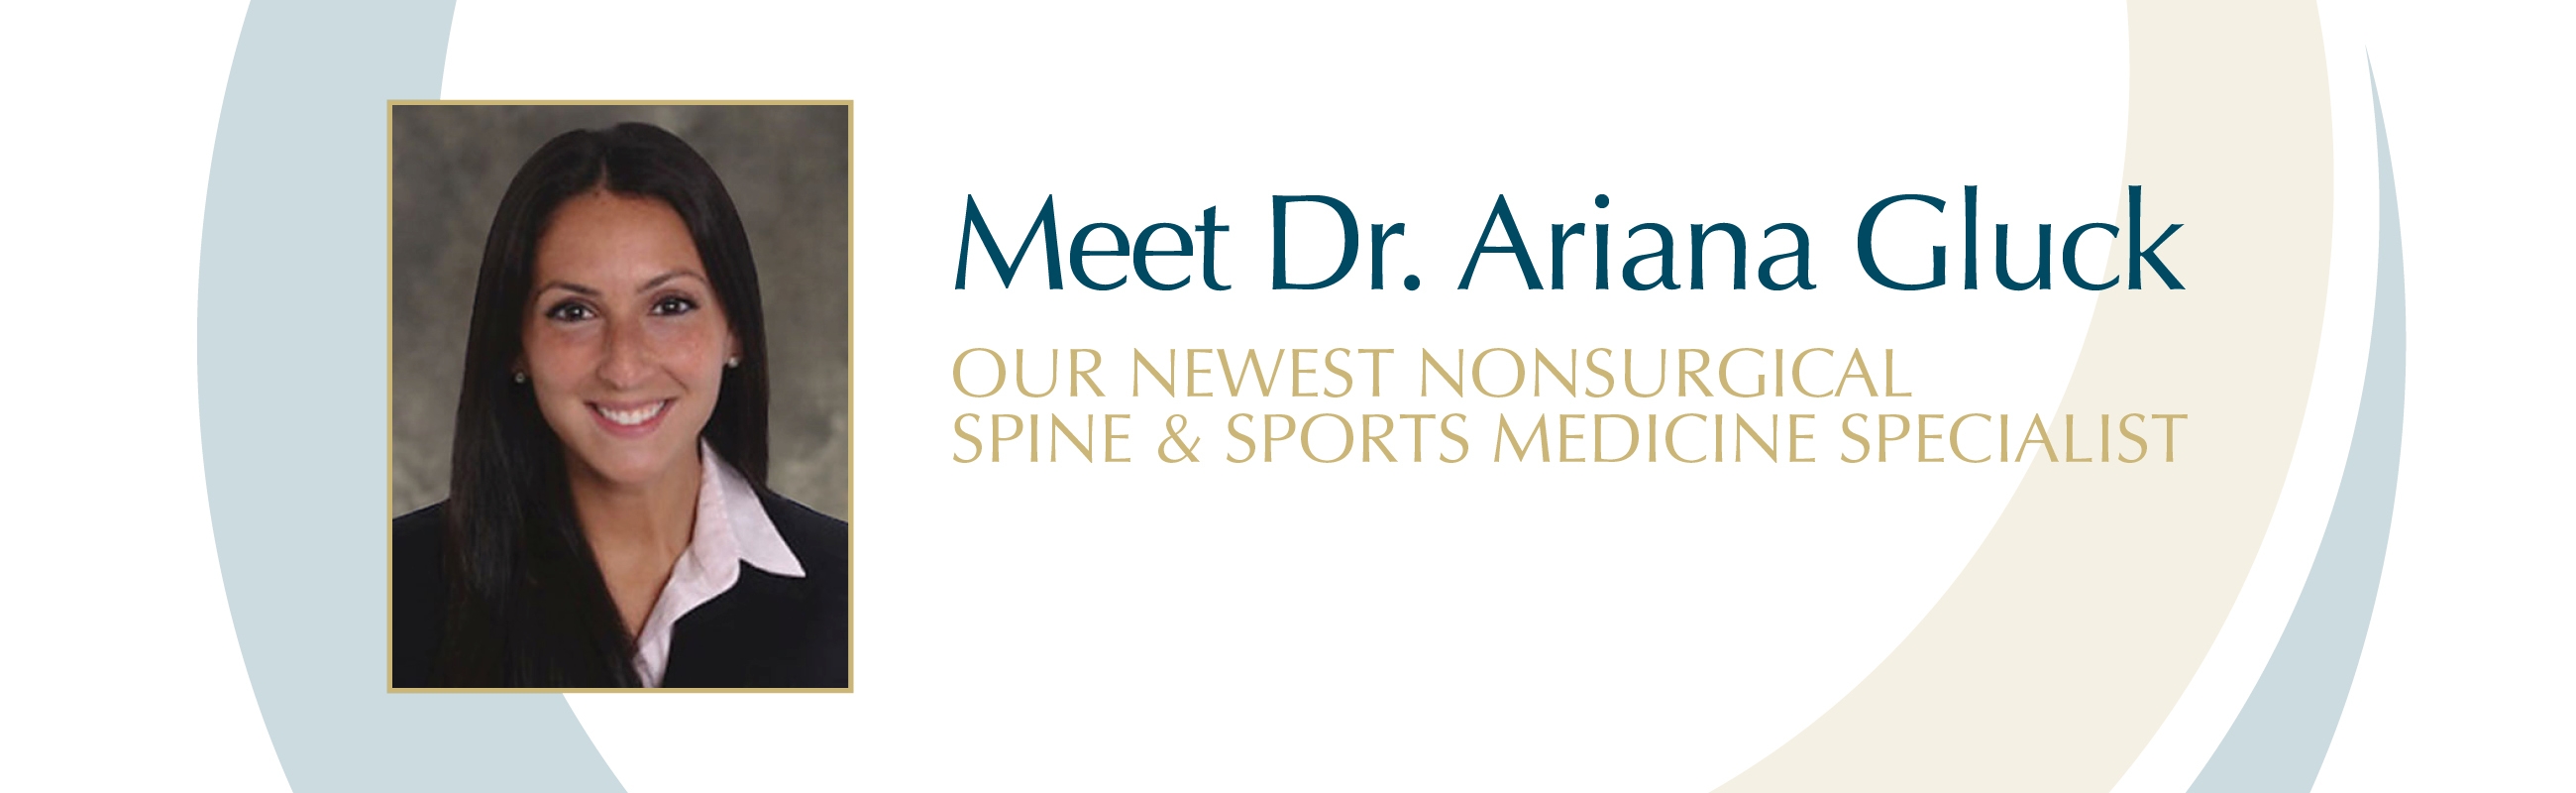 Meet Dr. Ariana Gluck